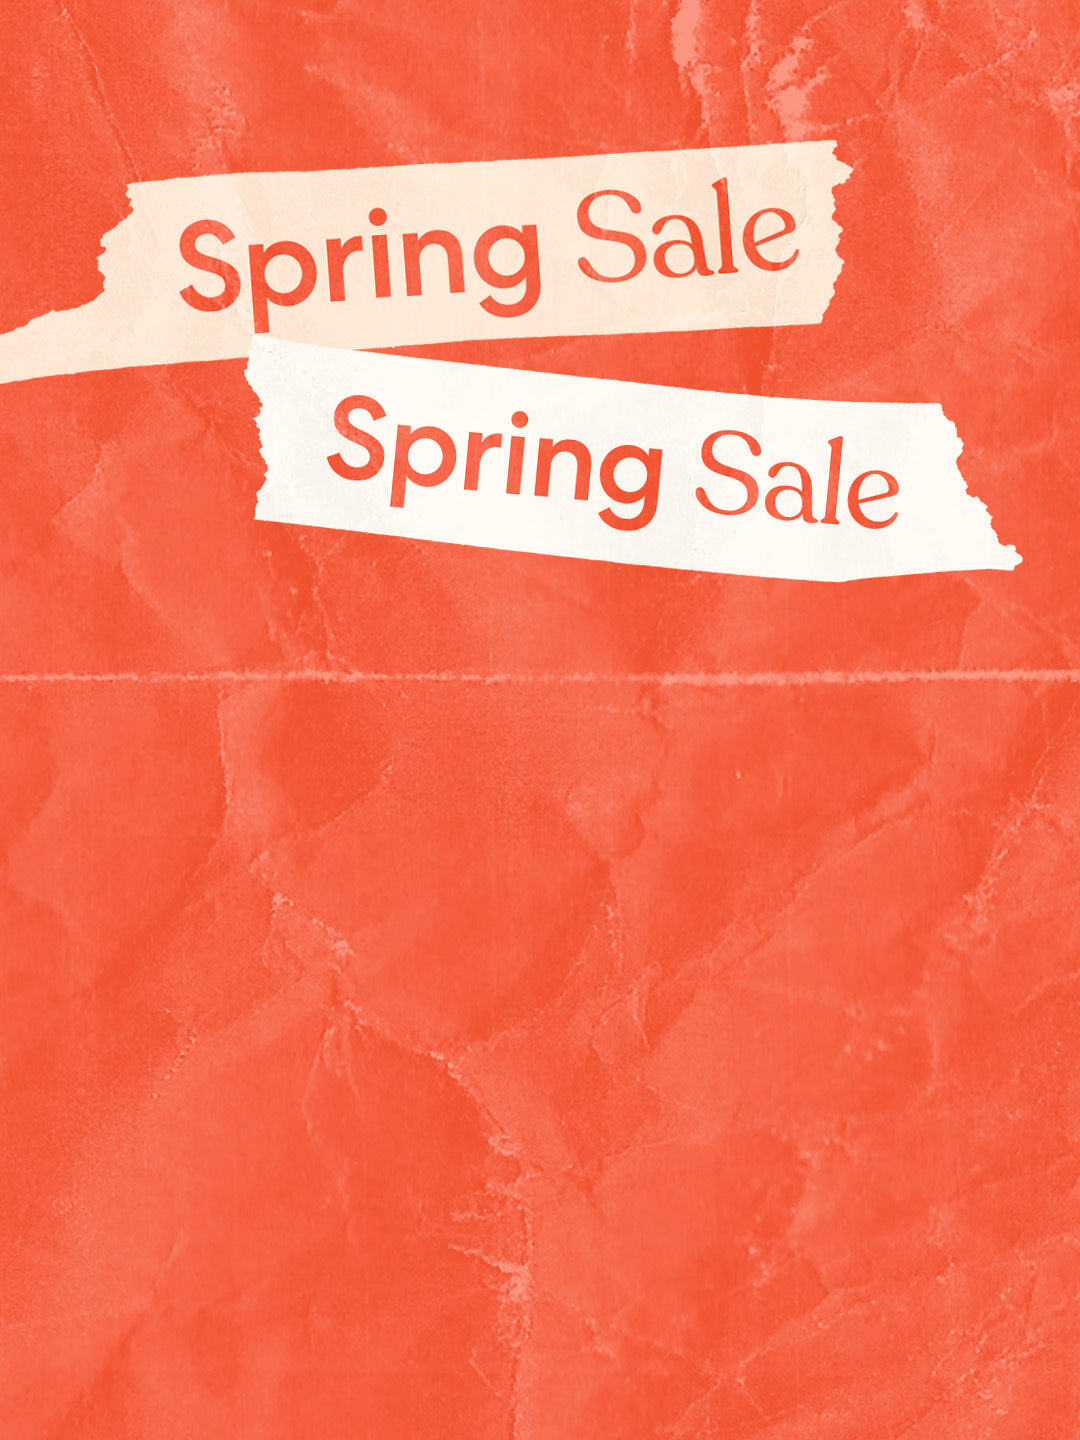 spring-sale-sets-oceansapart-banner-image-mobile.jpg